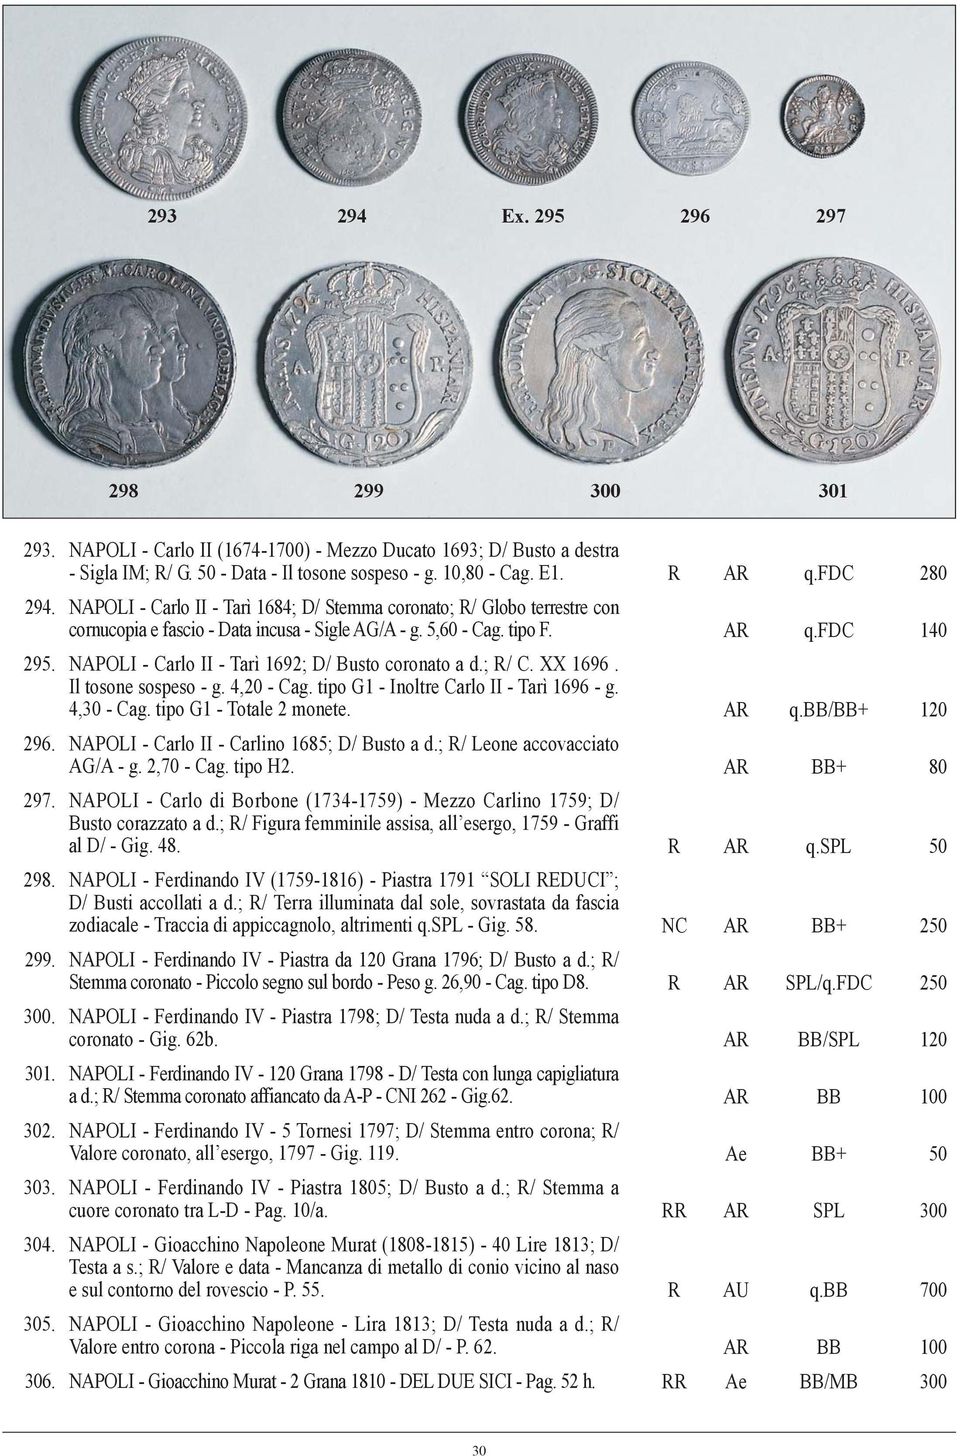 NAPOLI - Carlo II - Tarì 1692; D/ Busto coronato a d.; R/ C. XX 1696. Il tosone sospeso - g. 4,20 - Cag. tipo G1 - Inoltre Carlo II - Tarì 1696 - g. 4,30 - Cag. tipo G1 - Totale 2 monete. AR q.